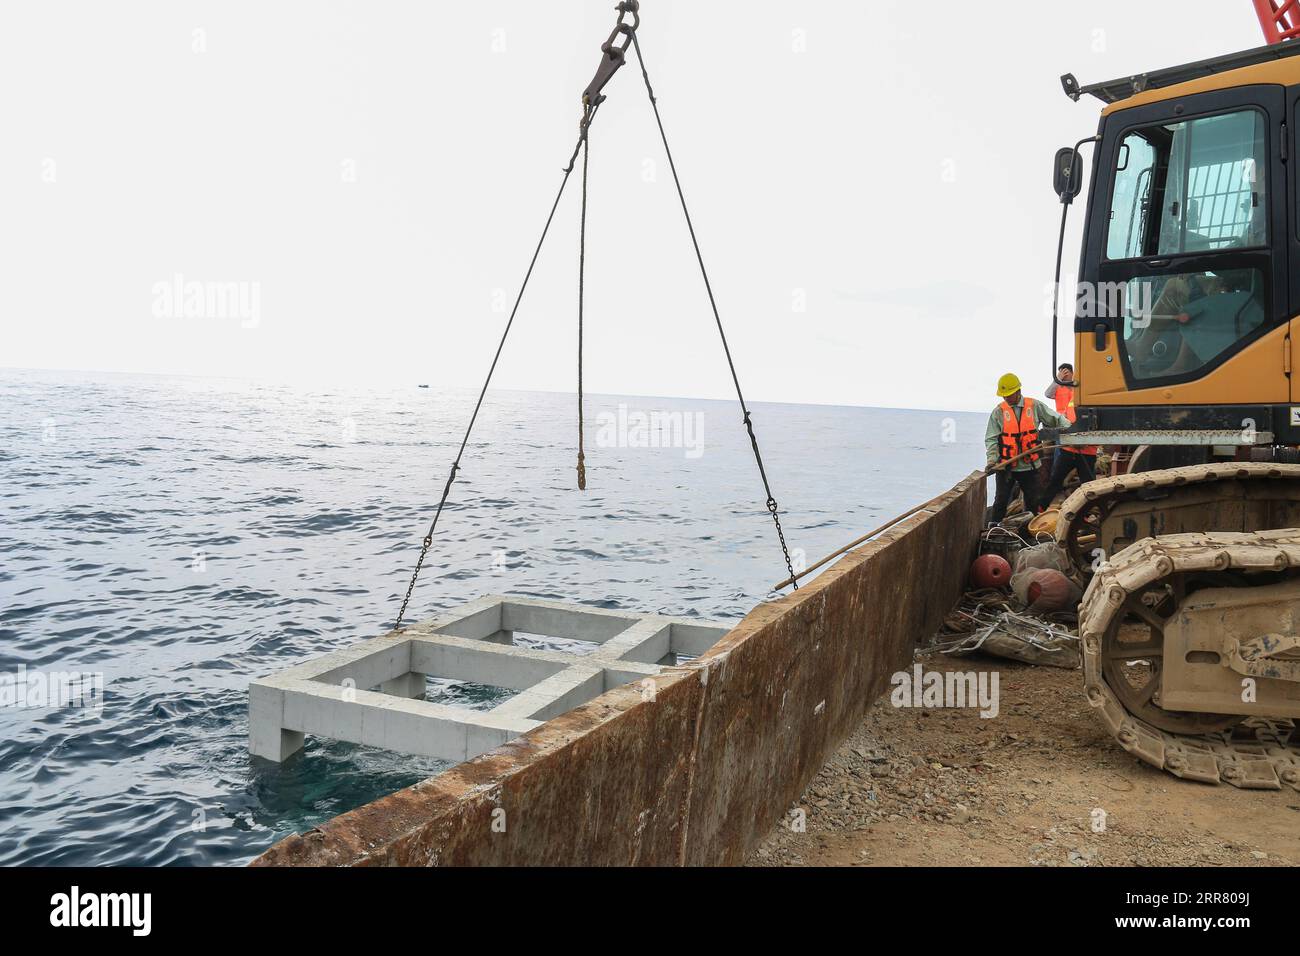 210410 -- HAIKOU, 10 aprile 2021 -- il personale ha posto barriere artificiali intorno all'isola di Wuzhizhou nella città di Sanya, nella provincia di Hainan nel sud della Cina, 1 aprile 2021. L'isola di Wuzhizhou ha lanciato un viaggio completo per costruire un ranch marino e ripristinare l'ecosistema marino, ponendo barriere artificiali sotto il mare e trapiantando coralli. Entro la fine del 2020, il ranch marino dell'isola di Wuzhizhou ha collocato 1.526 barriere coralline artificiali. E altri 870 saranno gettati entro un mese nella recente collocazione delle barriere artificiali. CHINA-HAINAN-SANYA-MARINE RANCH CN ZHOUXJIAYI PUBLICATIONXNOTXINXCHN Foto Stock